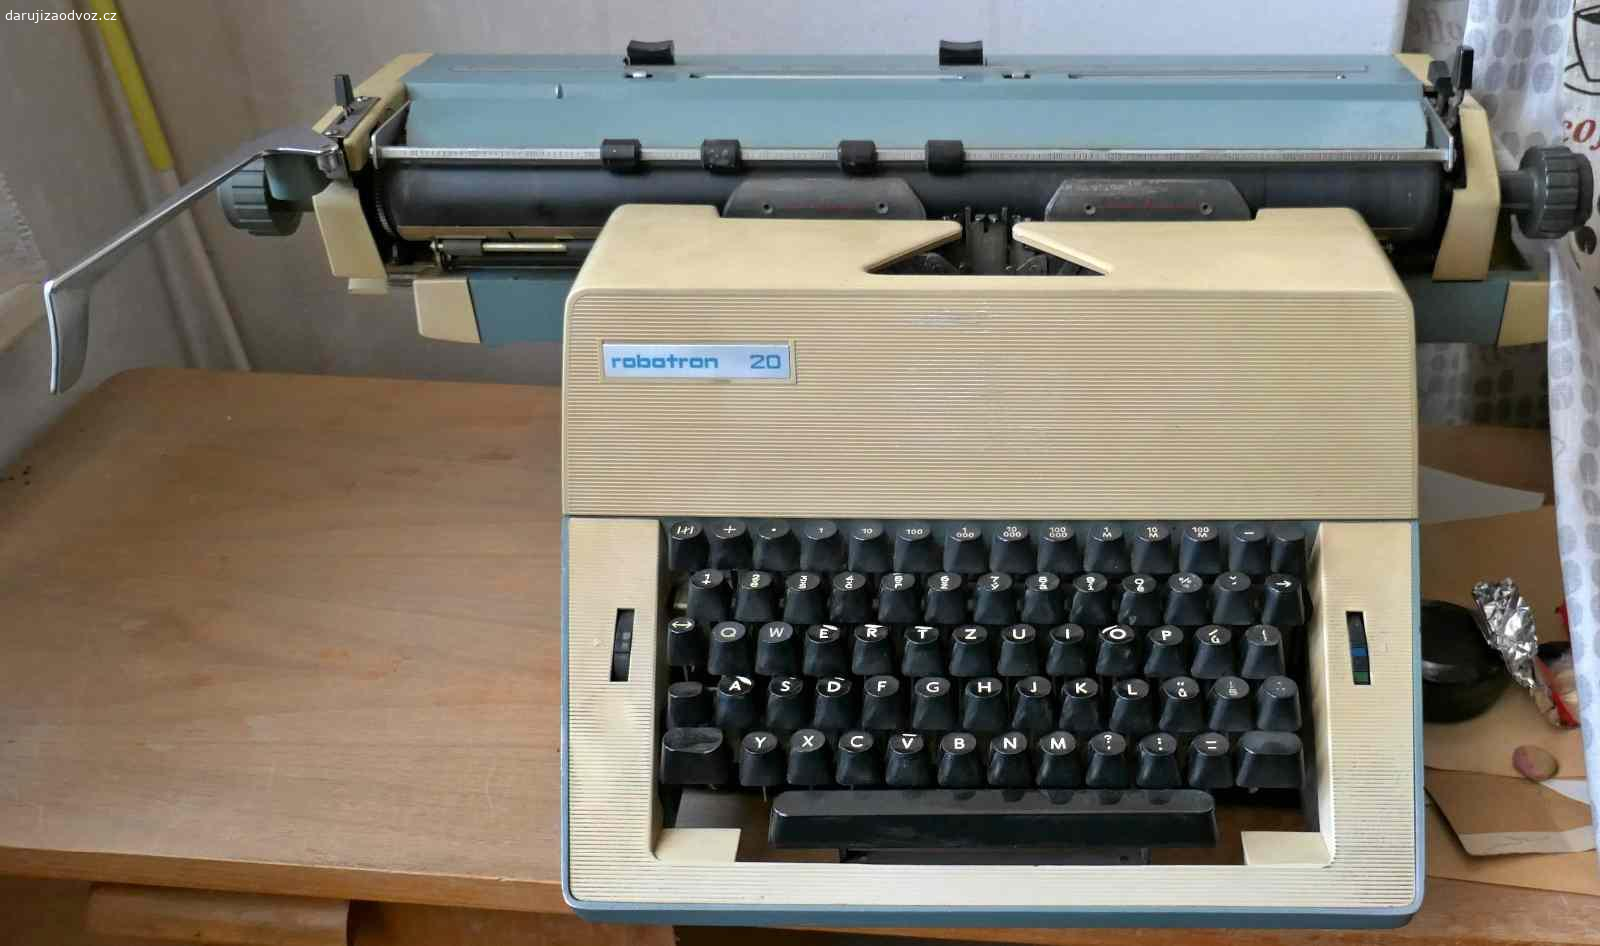 Daruji psací stroj. Dva starší mechanické psací stroje s dlouhým válcem - Optima a Robotron.
Funkční.